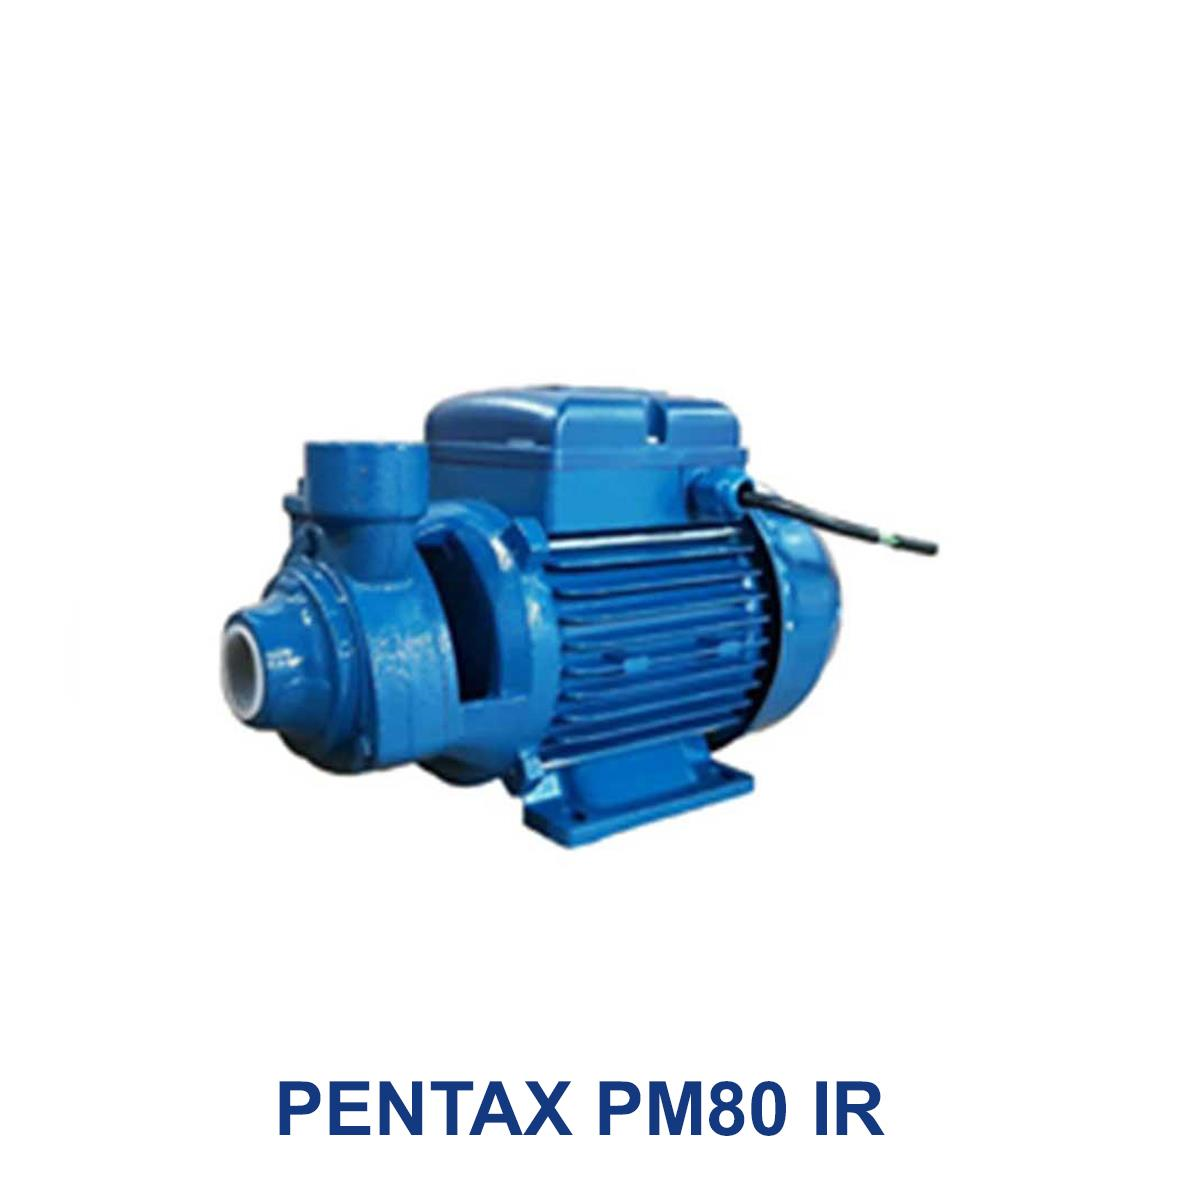 PENTAX-PM80-IR